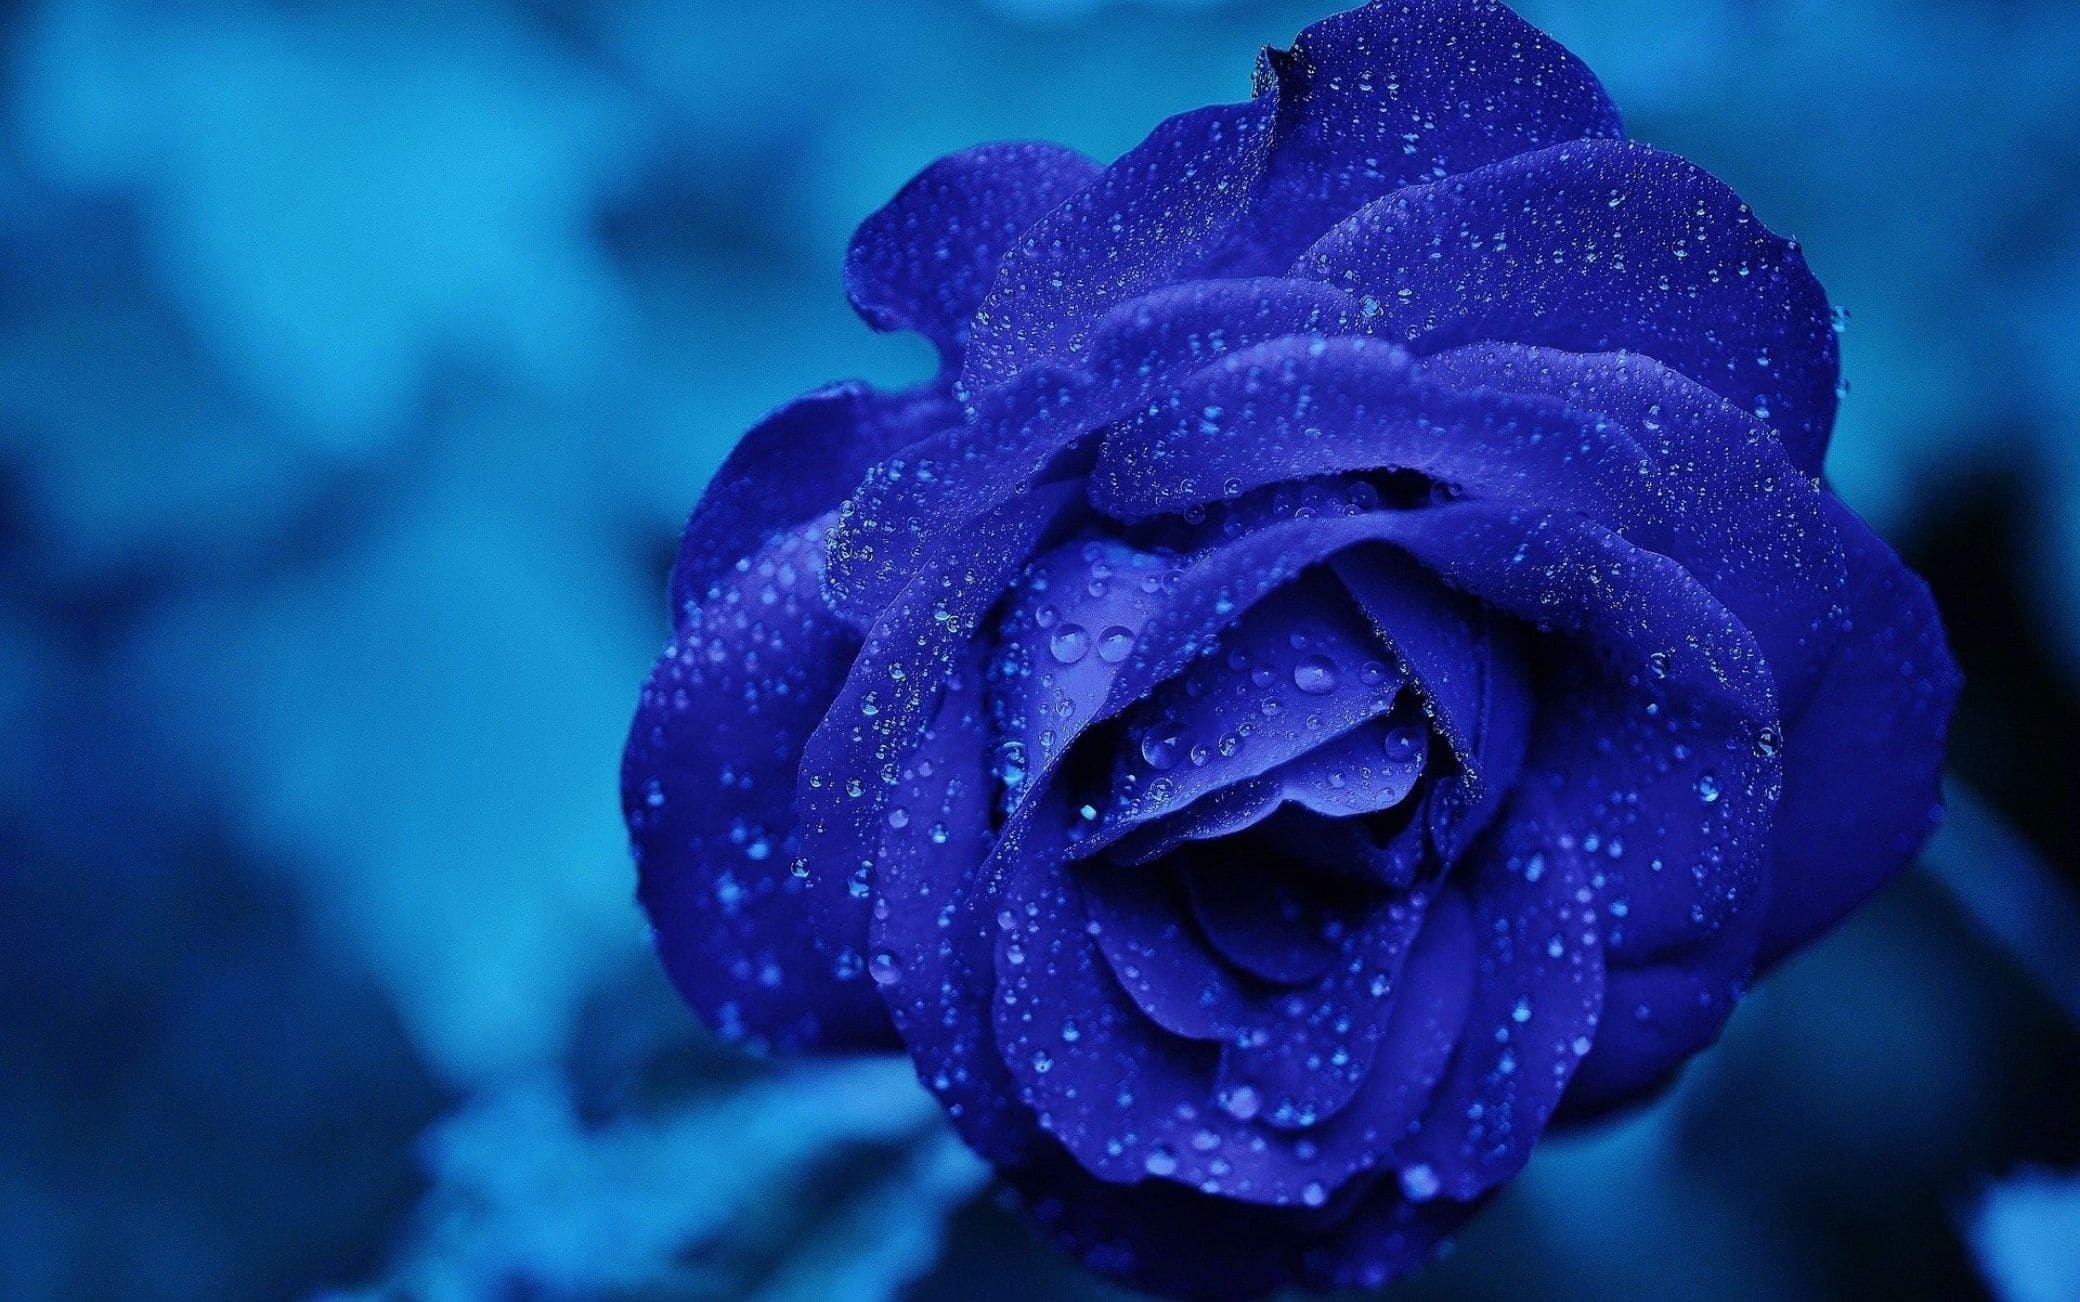 Rose blu, il significato